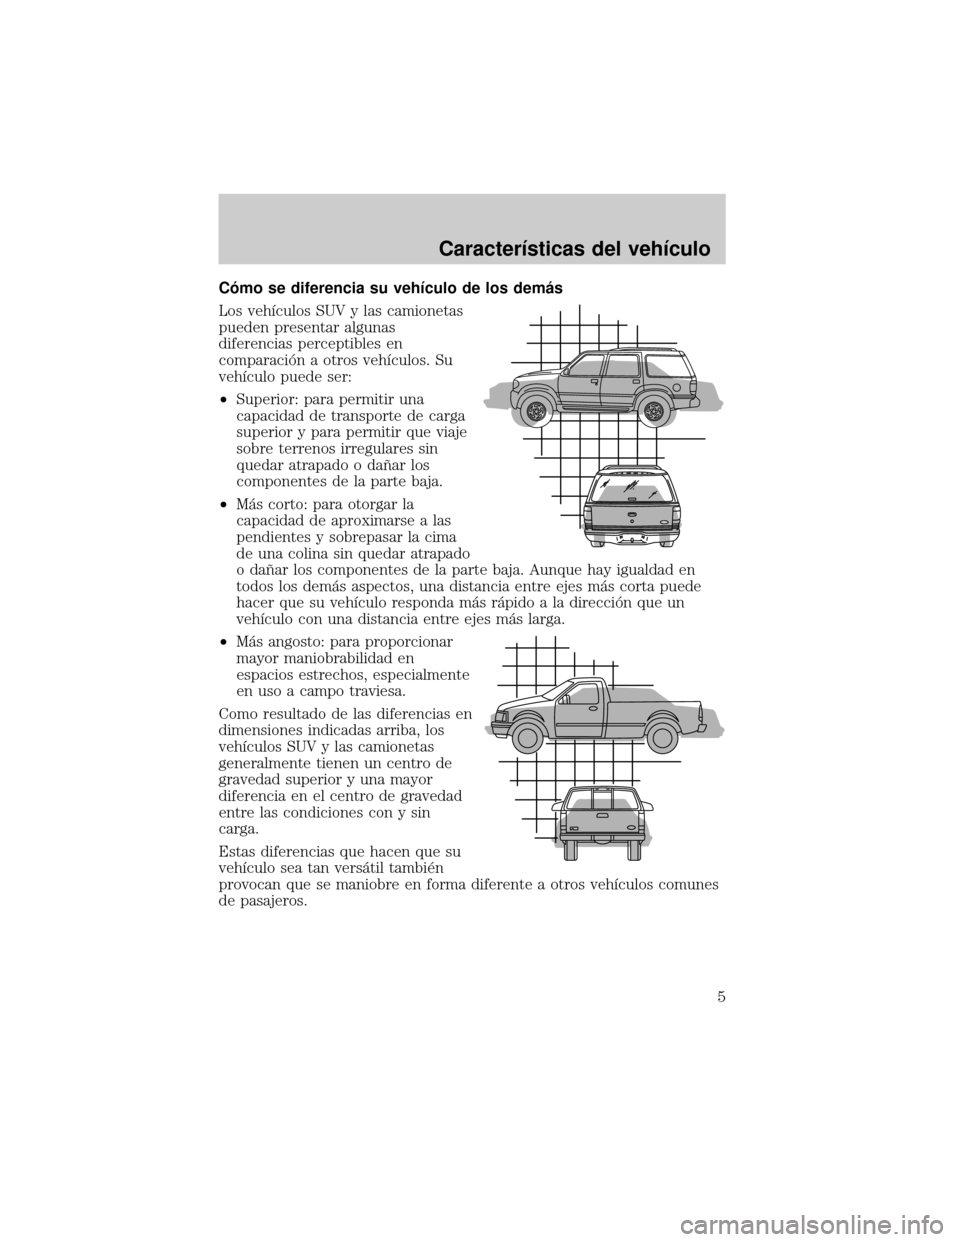 Mercury Mountaineer 2006  Manual de Usuario (in Spanish) Câmo se diferencia su vehÛculo de los demµs
Los vehÛculos SUV y las camionetas
pueden presentar algunas
diferencias perceptibles en
comparaciân a otros vehÛculos. Su
vehÛculo puede ser:
²Super